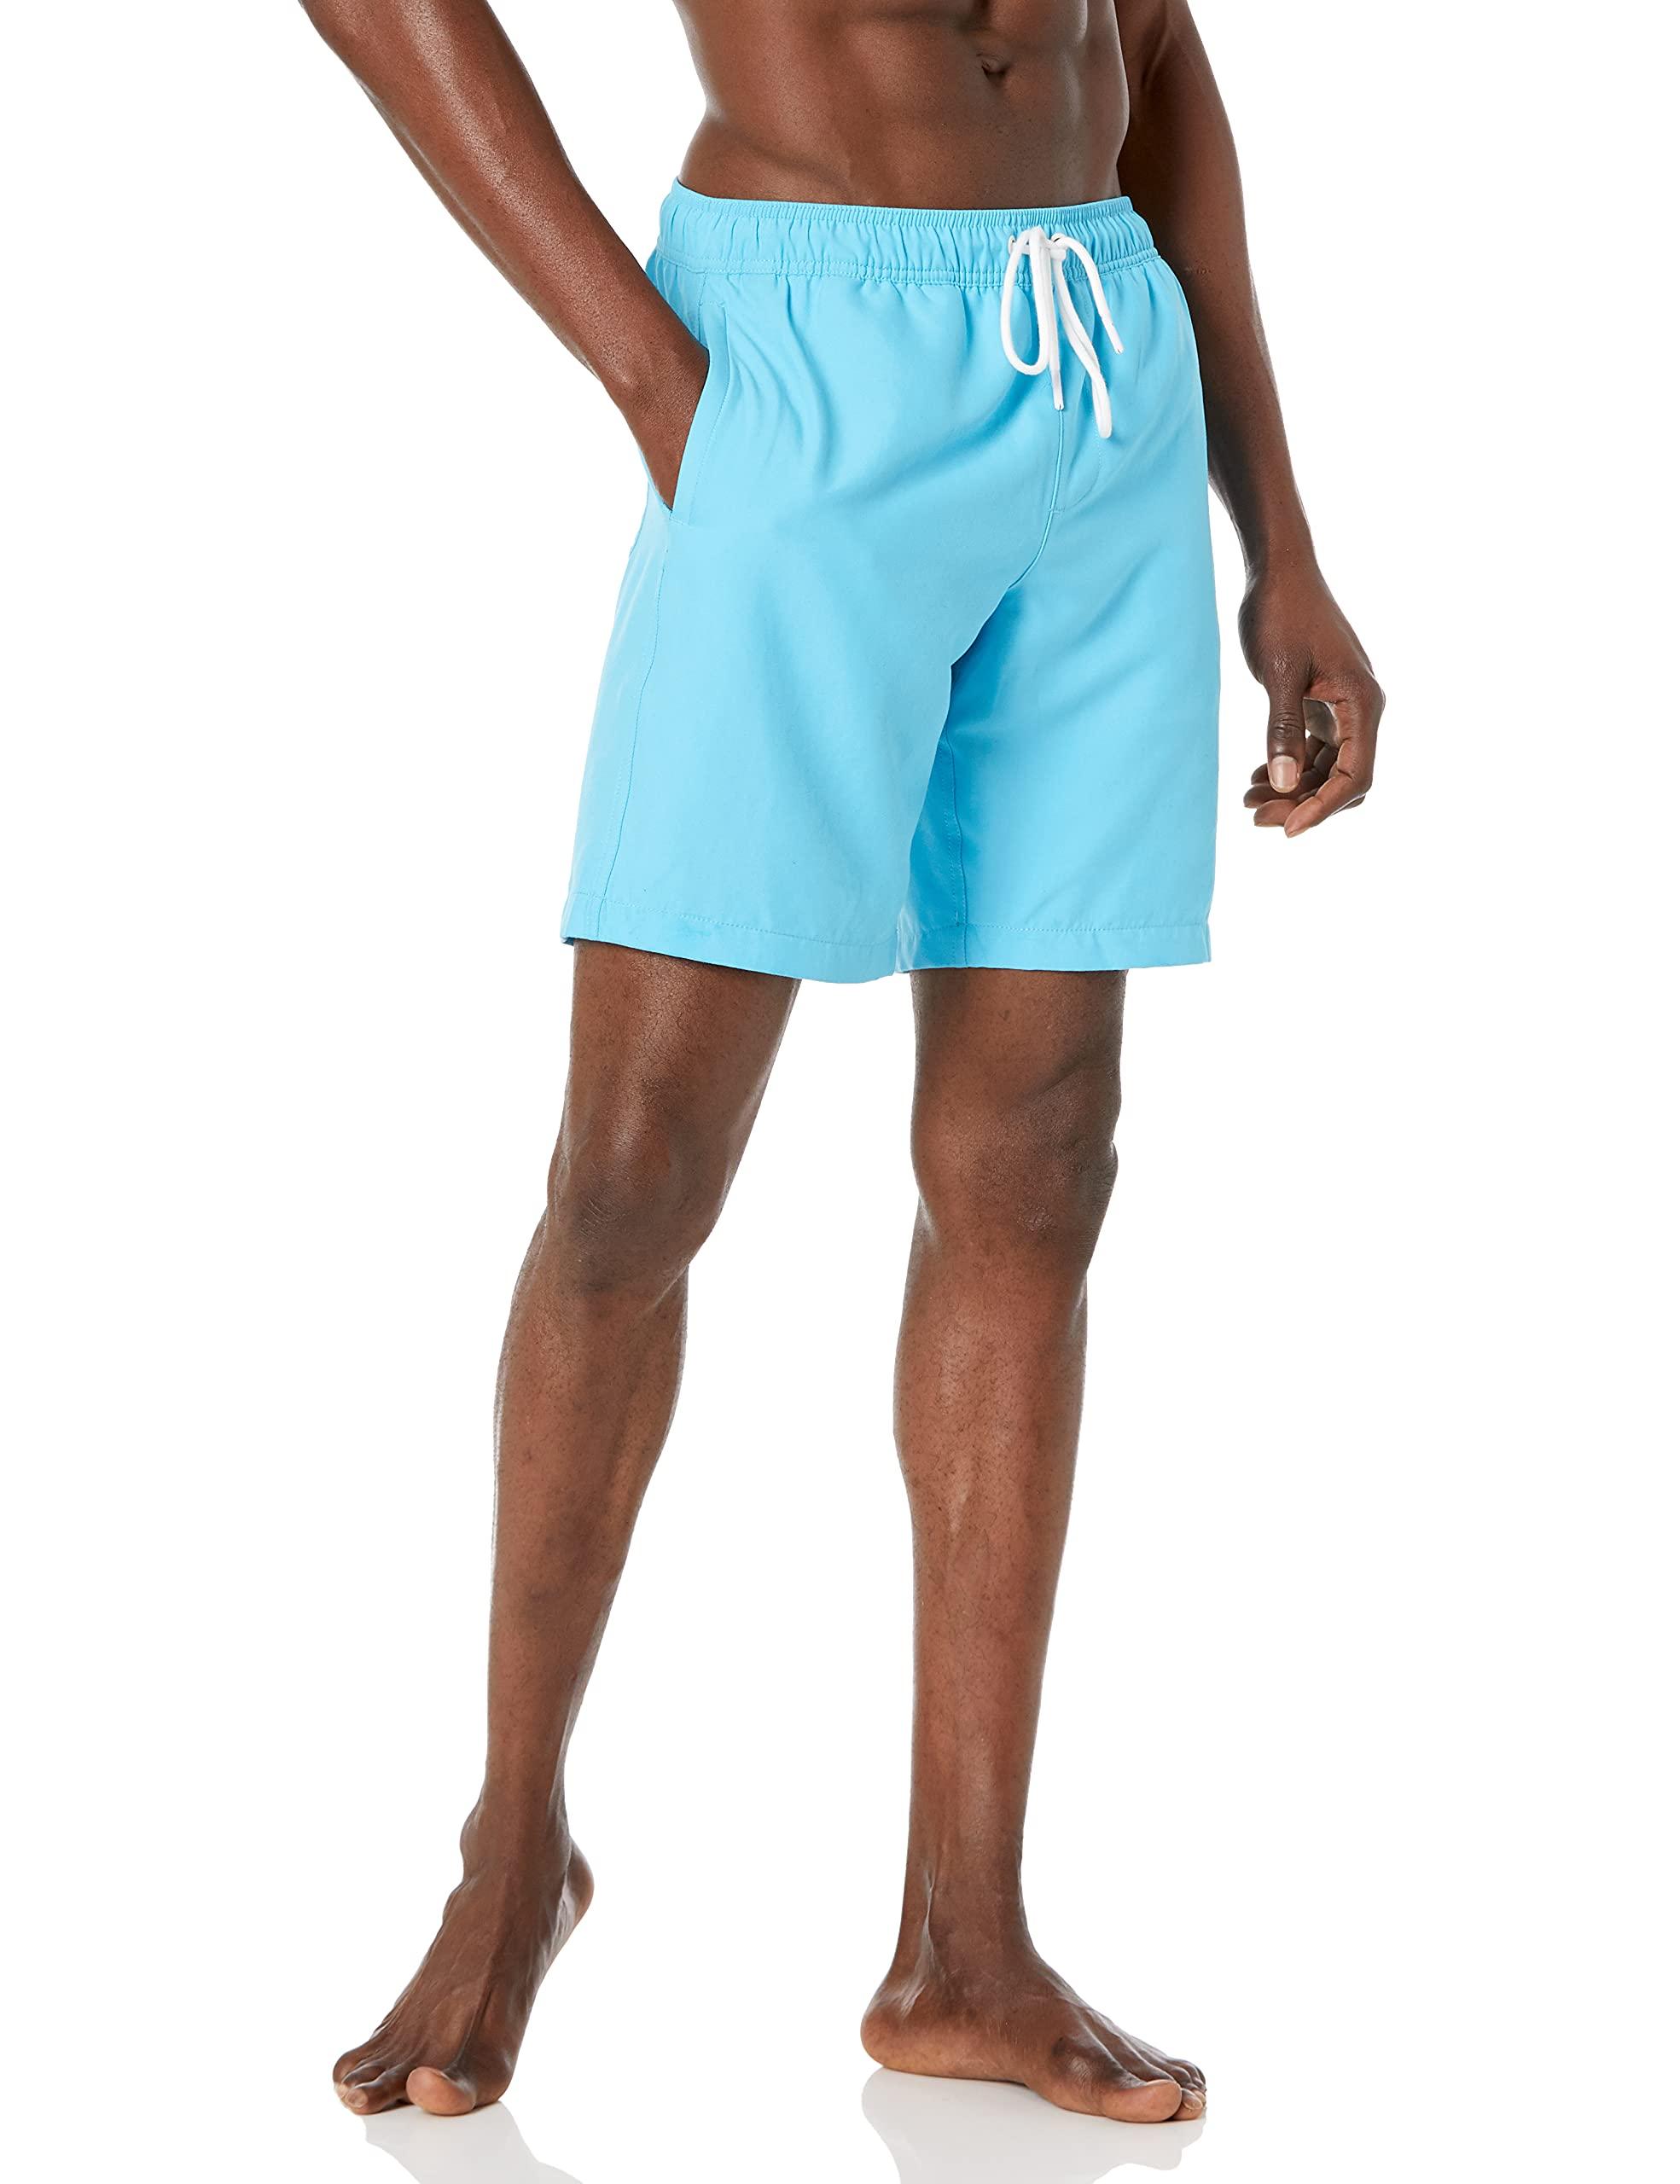 Bermuda Chino Entrejambe 25,4 Cm Short Amazon Essentials en coloris Noir Femme Vêtements Shorts Shorts fluides/cargo 